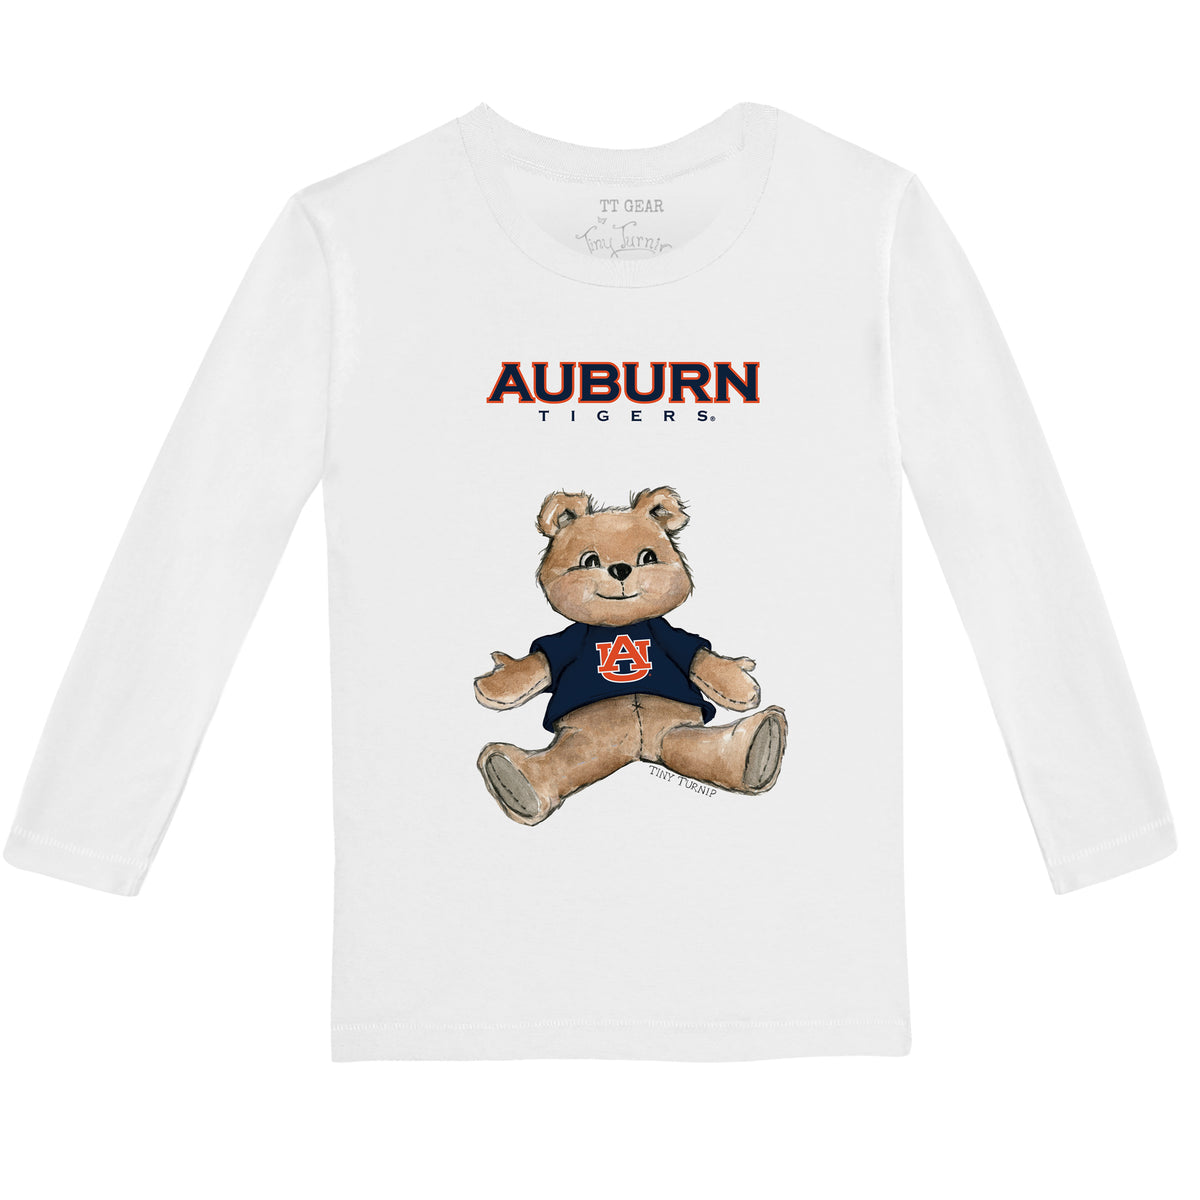 Auburn Tigers Teddy Long-Sleeve Tee Shirt